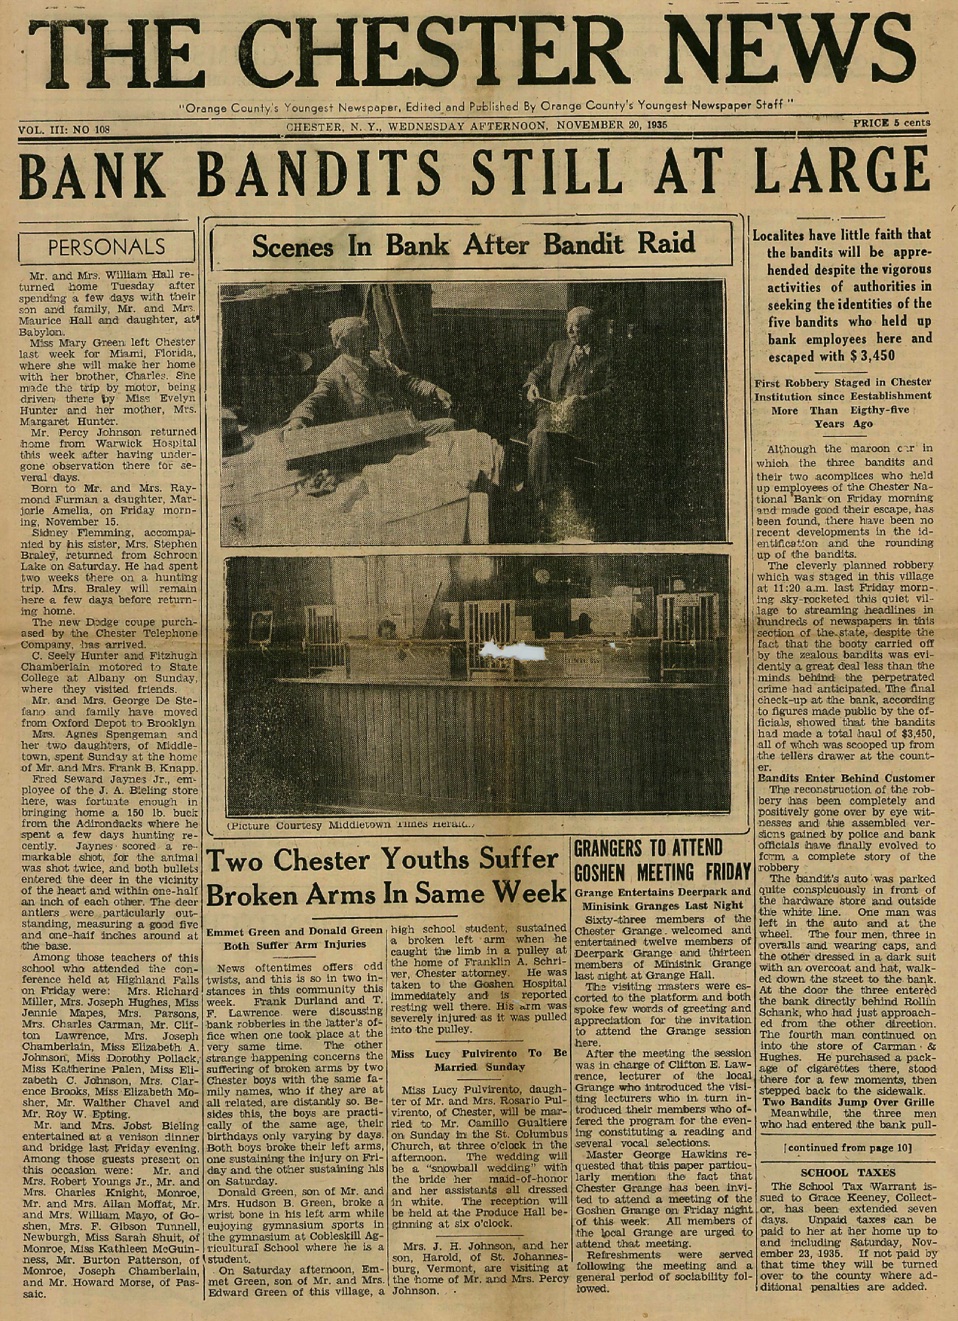 The Chester News Vol. III  No. 108, November 20, 1935: Chester National Bank Bandits Still at Large